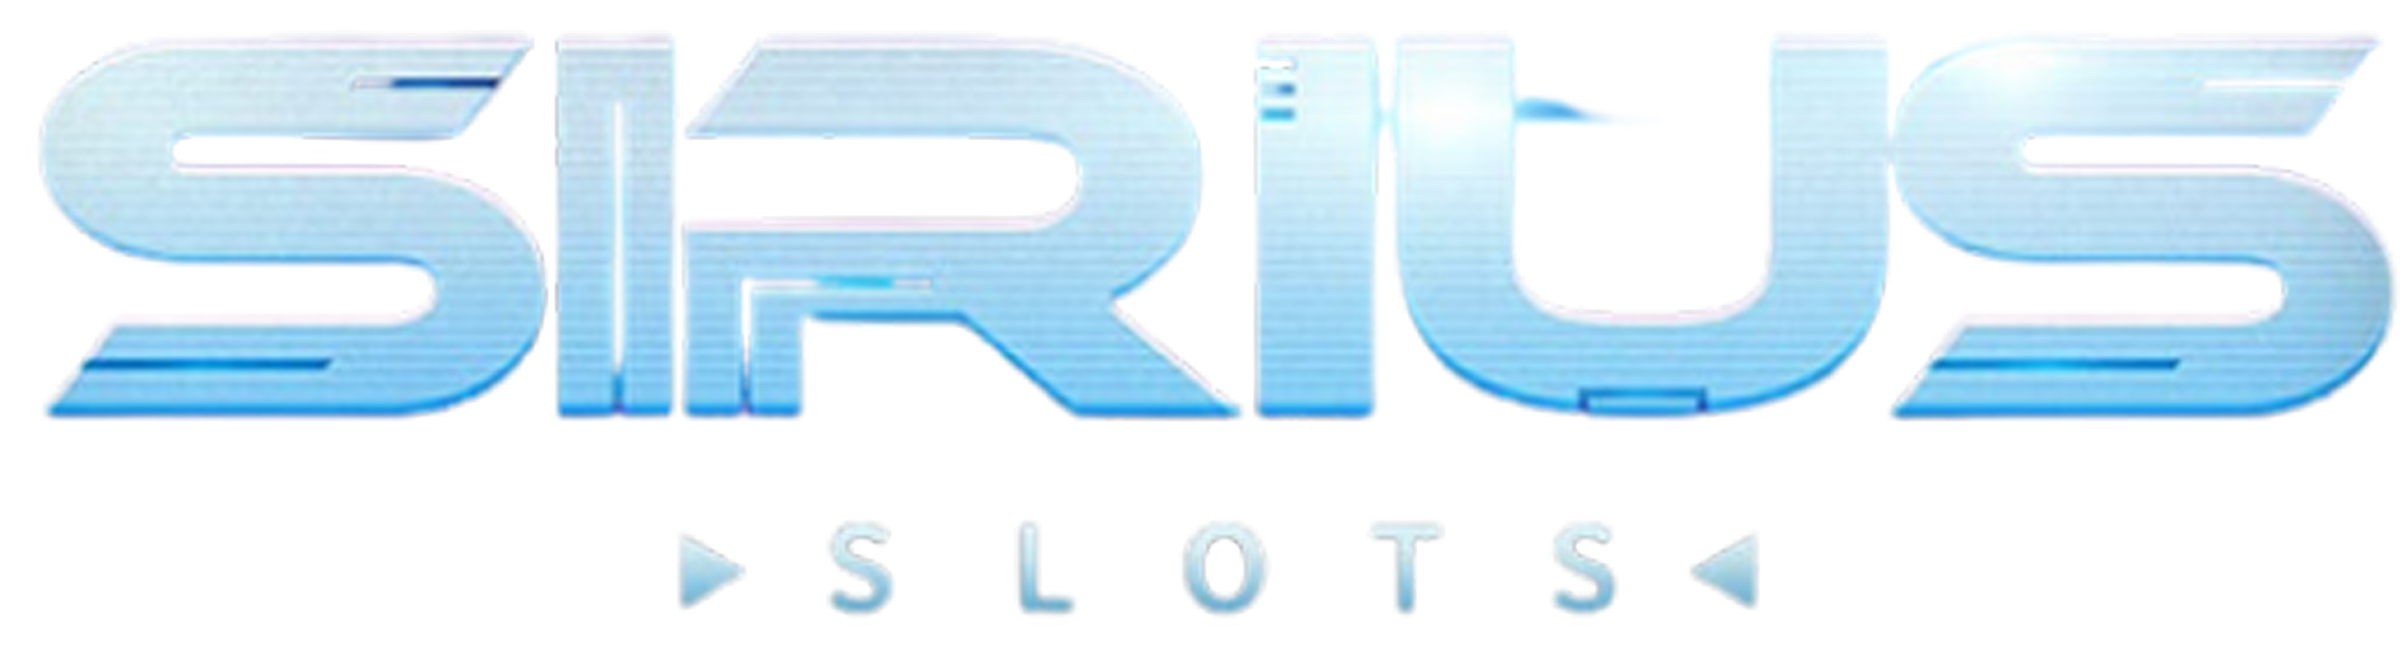 Sirius Slots Casino